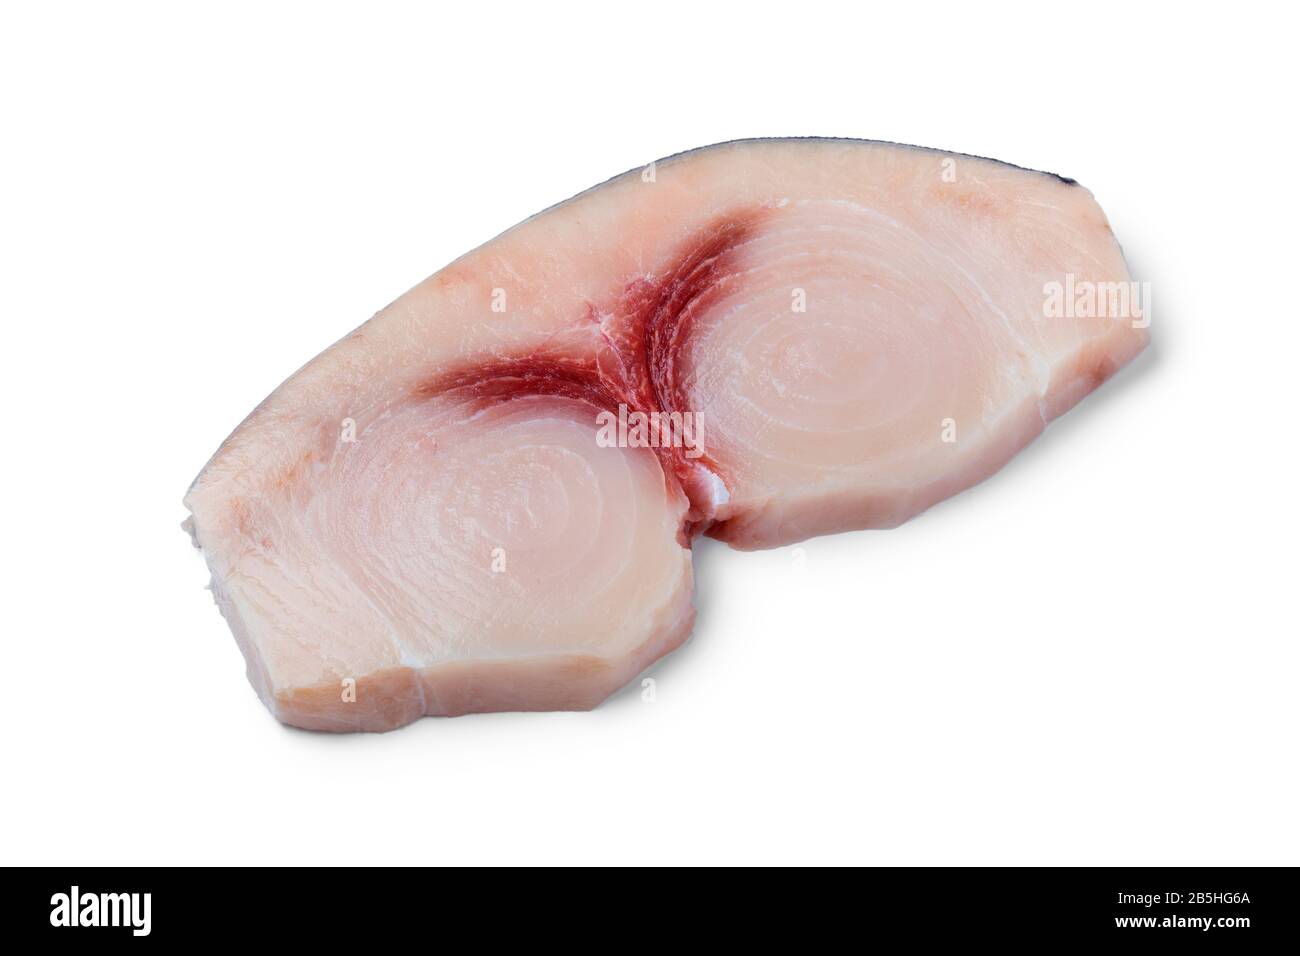 Single raw fresh swordfish fillet isolated on white background Stock Photo